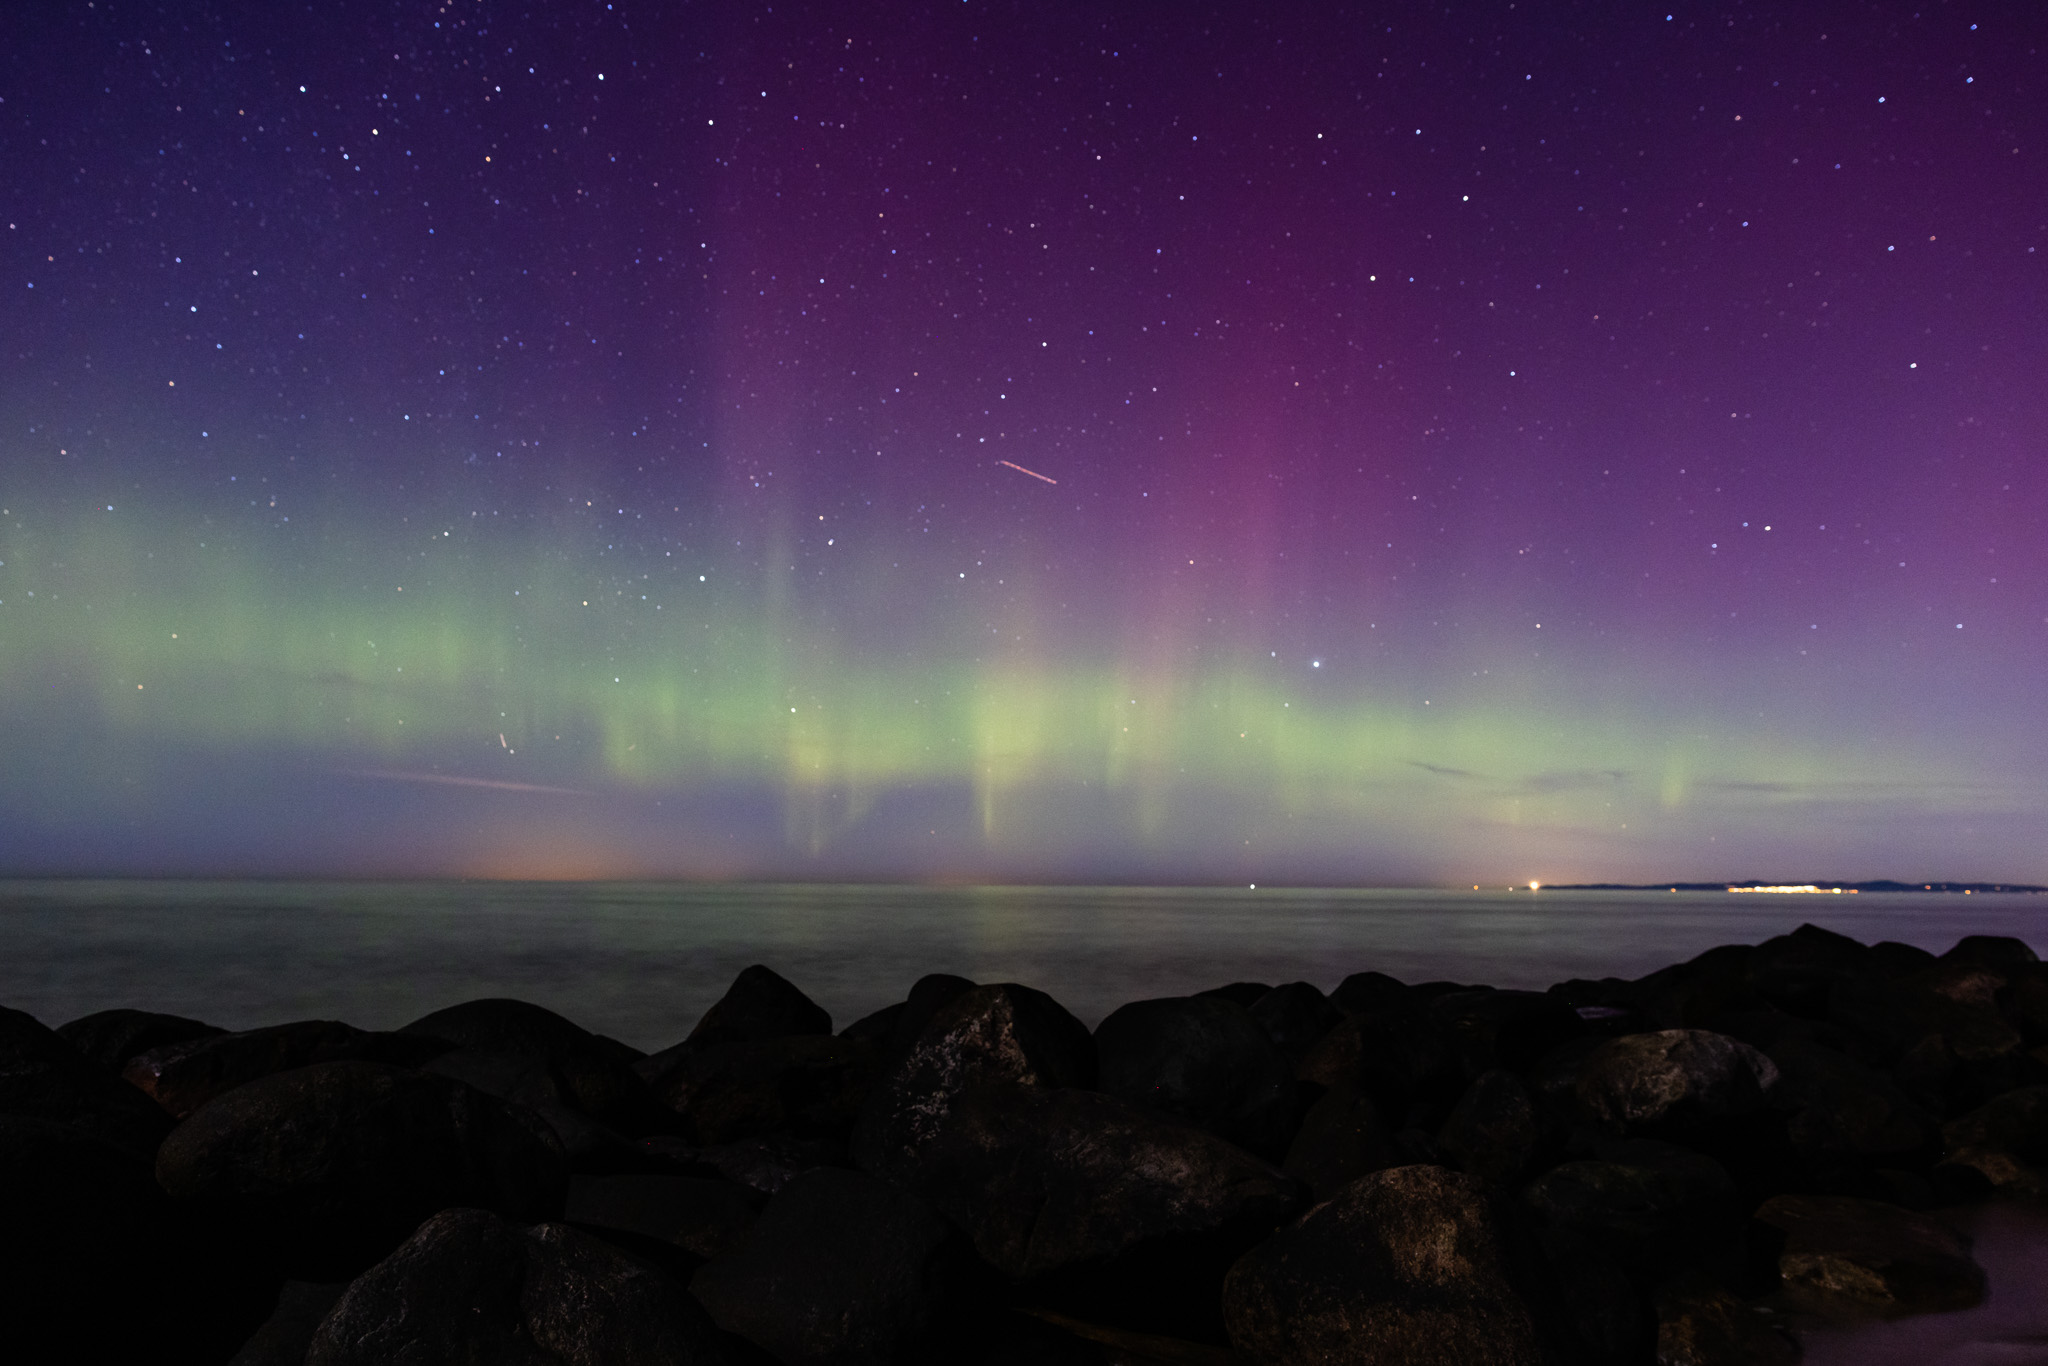 aurora-borealis-northern-lights-denmark-gilleleje-gegenwind-astro-photography-5